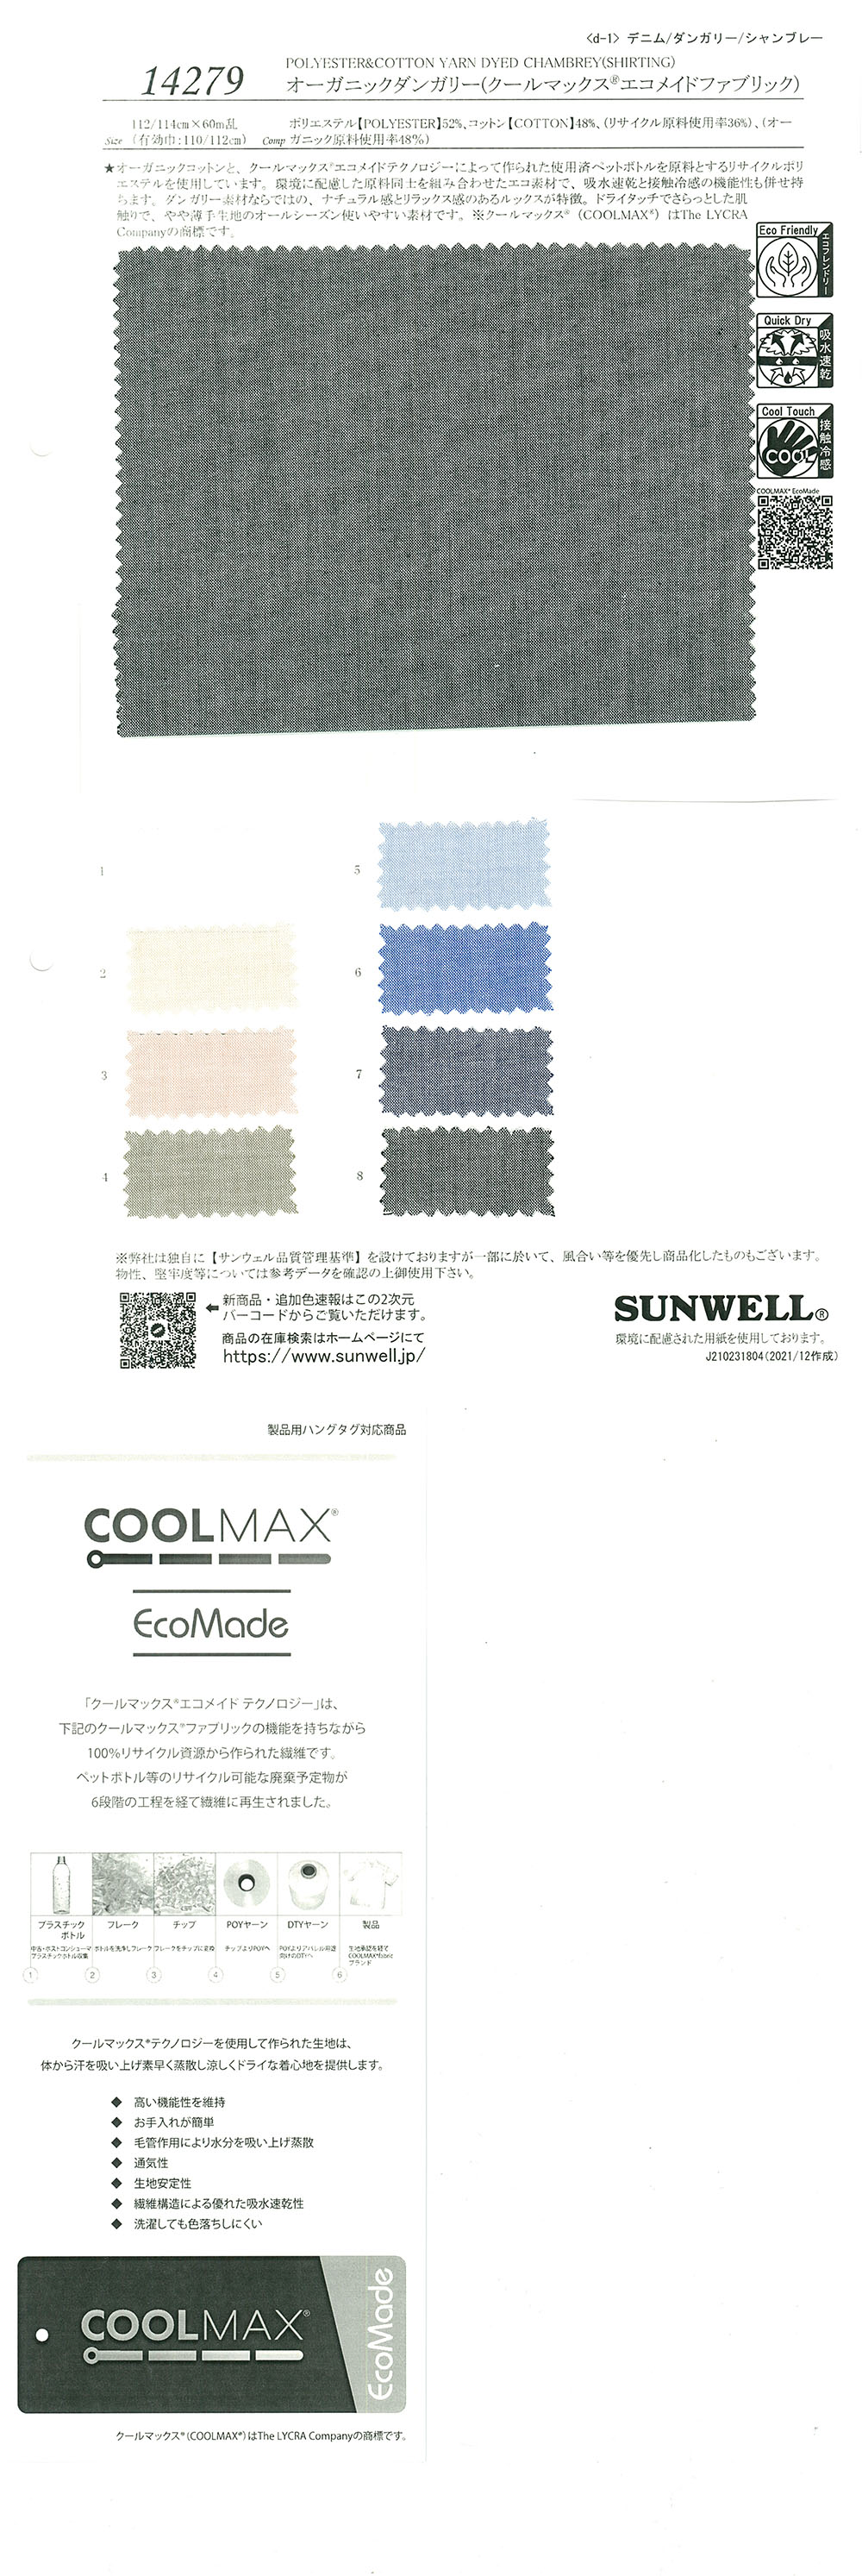 14279 Vải Thô Dungaree Hữu Cơ (Vải Coolmax(R) Ecomade) SUNWELL ( Giếng Trời )